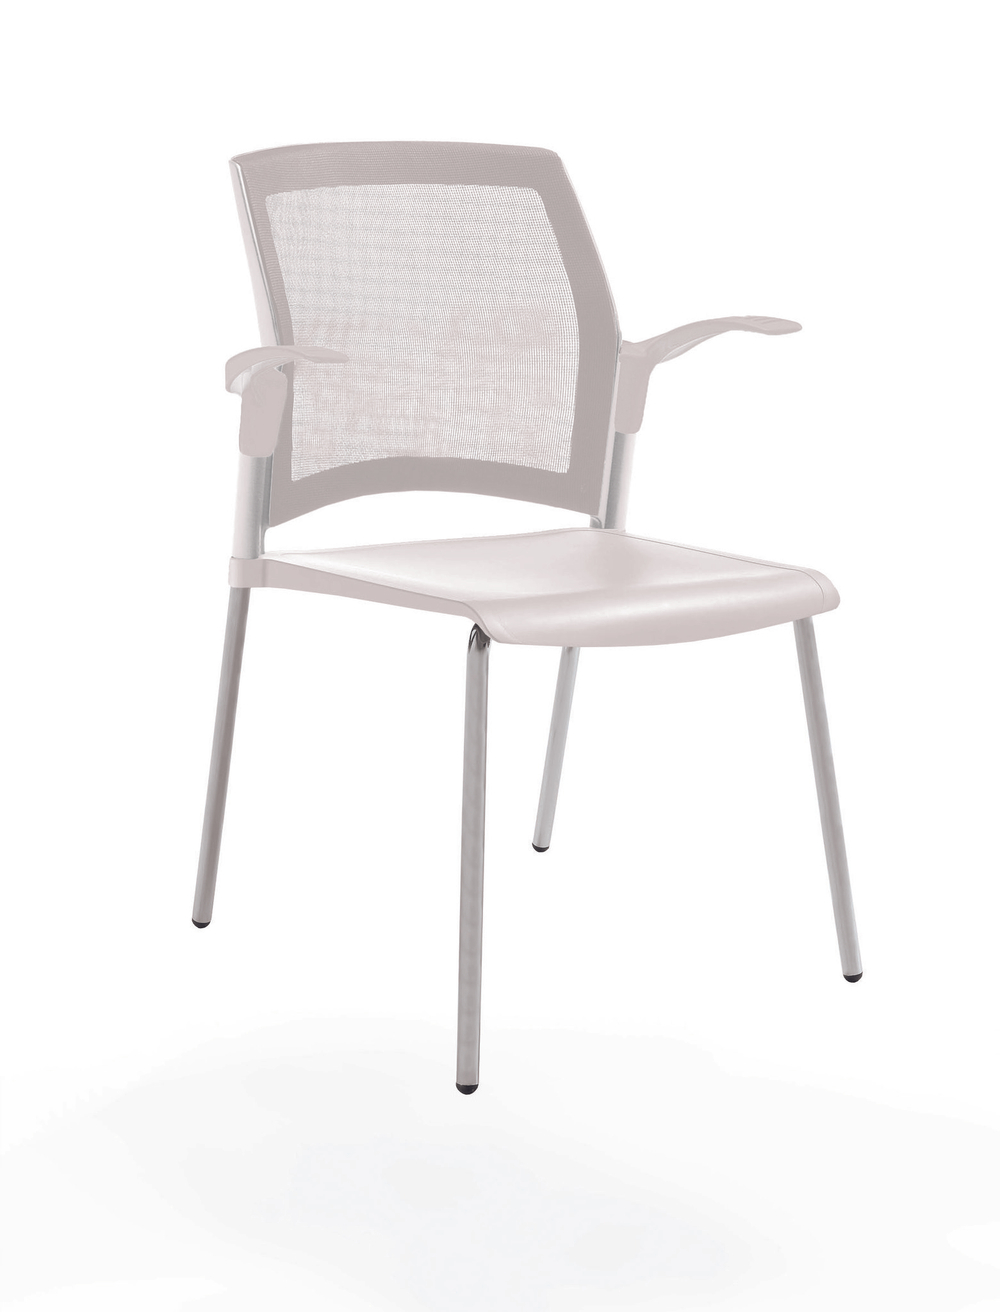 стул Rewind на 4 ногах, каркас серыйй, пластик белый, спинка-сетка, с открытыми подлокотниками